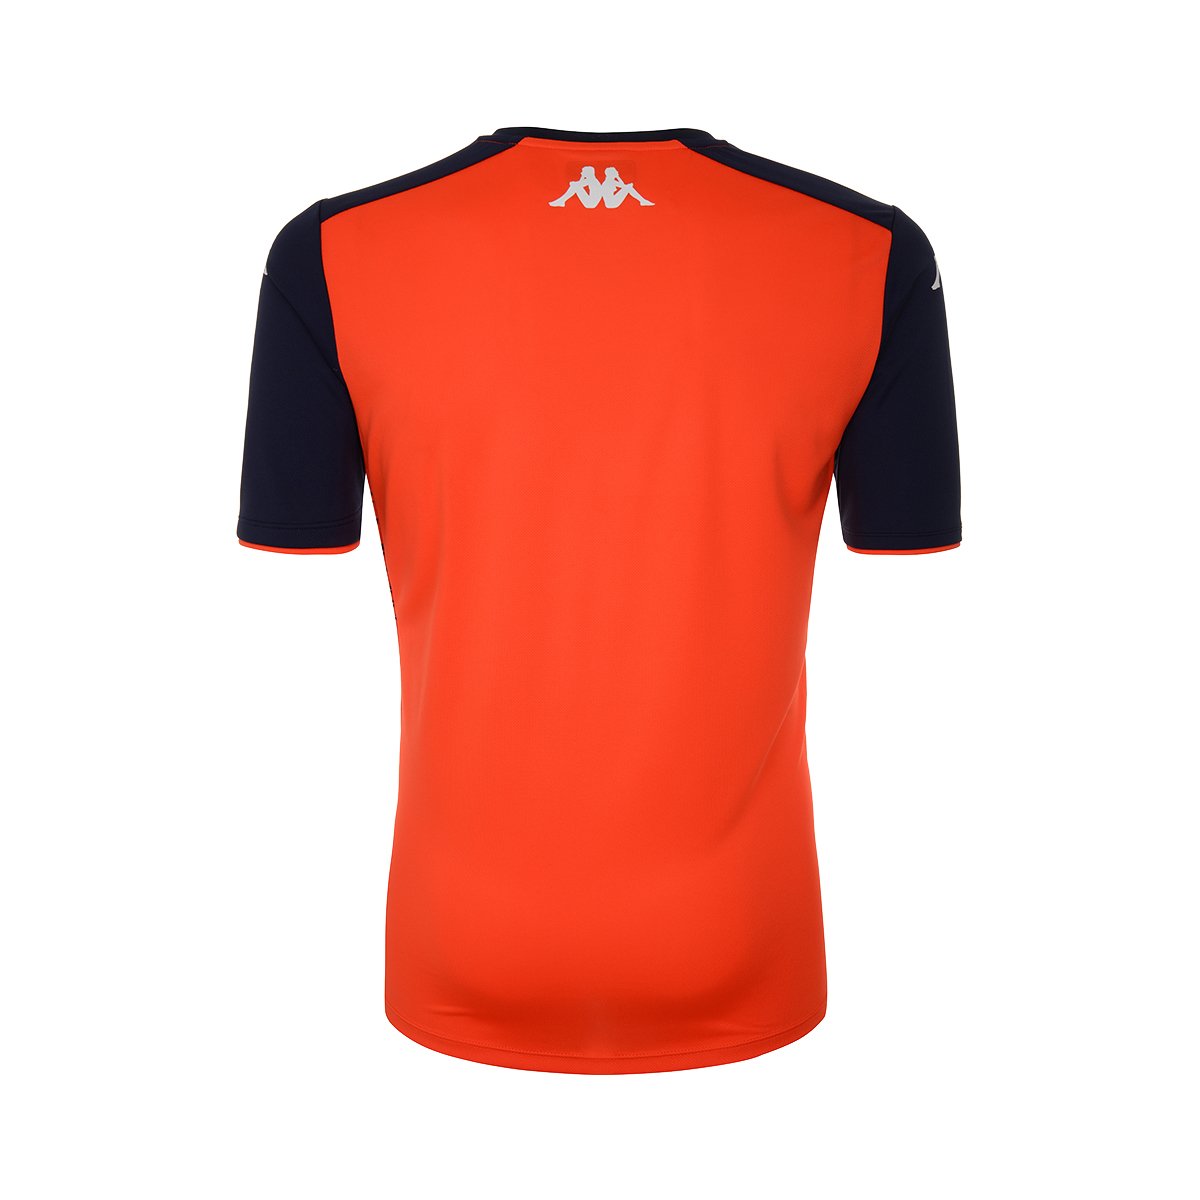 Camiseta Aboupre Pro 5 AS Monaco niño Rojo - Imagen 2